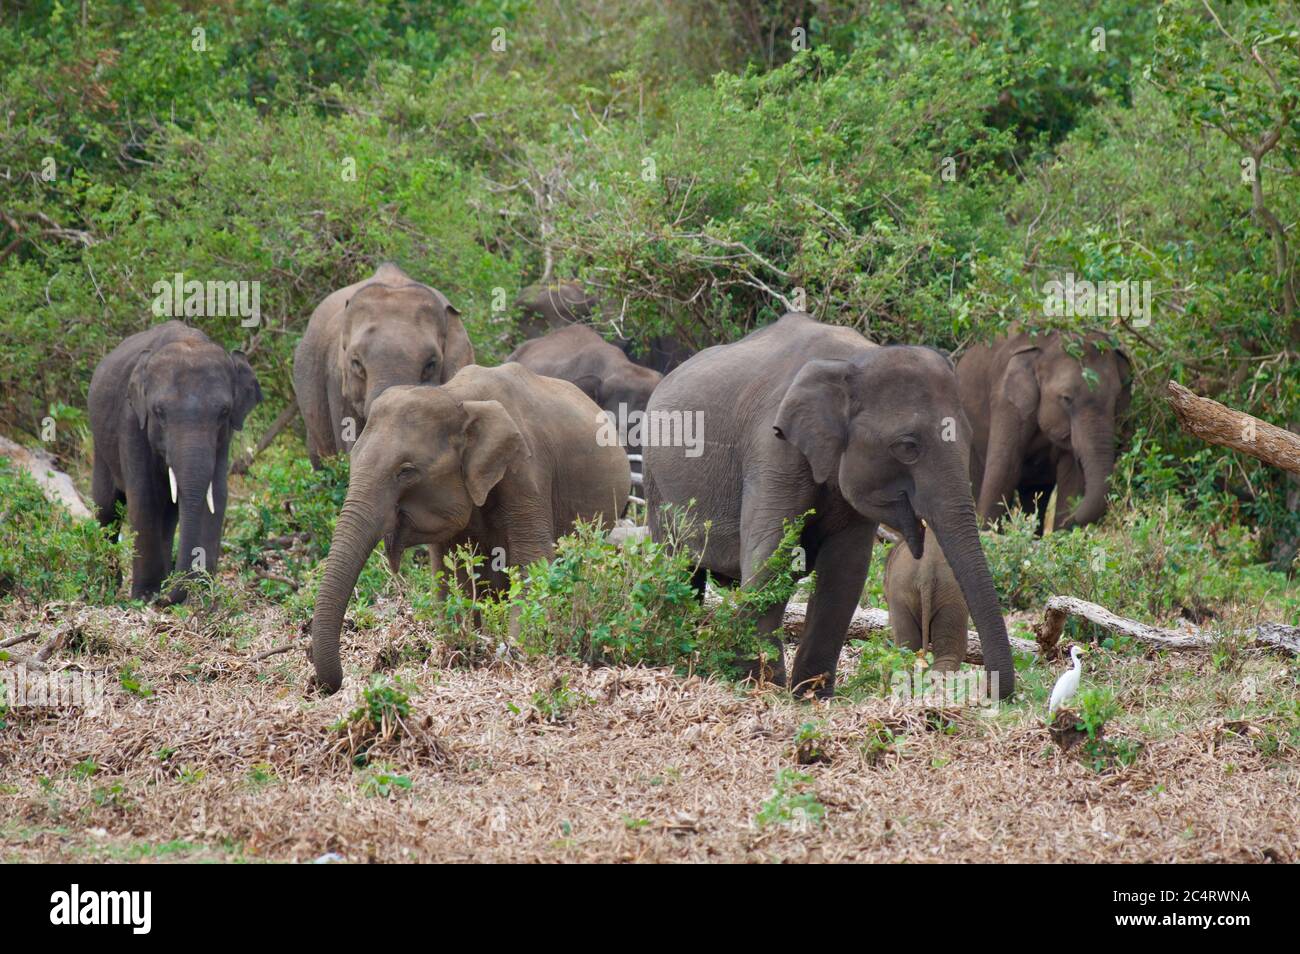 Un groupe d'éléphants sri-lankais (Elepha maximus maximus) au parc national de Kalawewa, province du Centre-Nord, Sri Lanka Banque D'Images